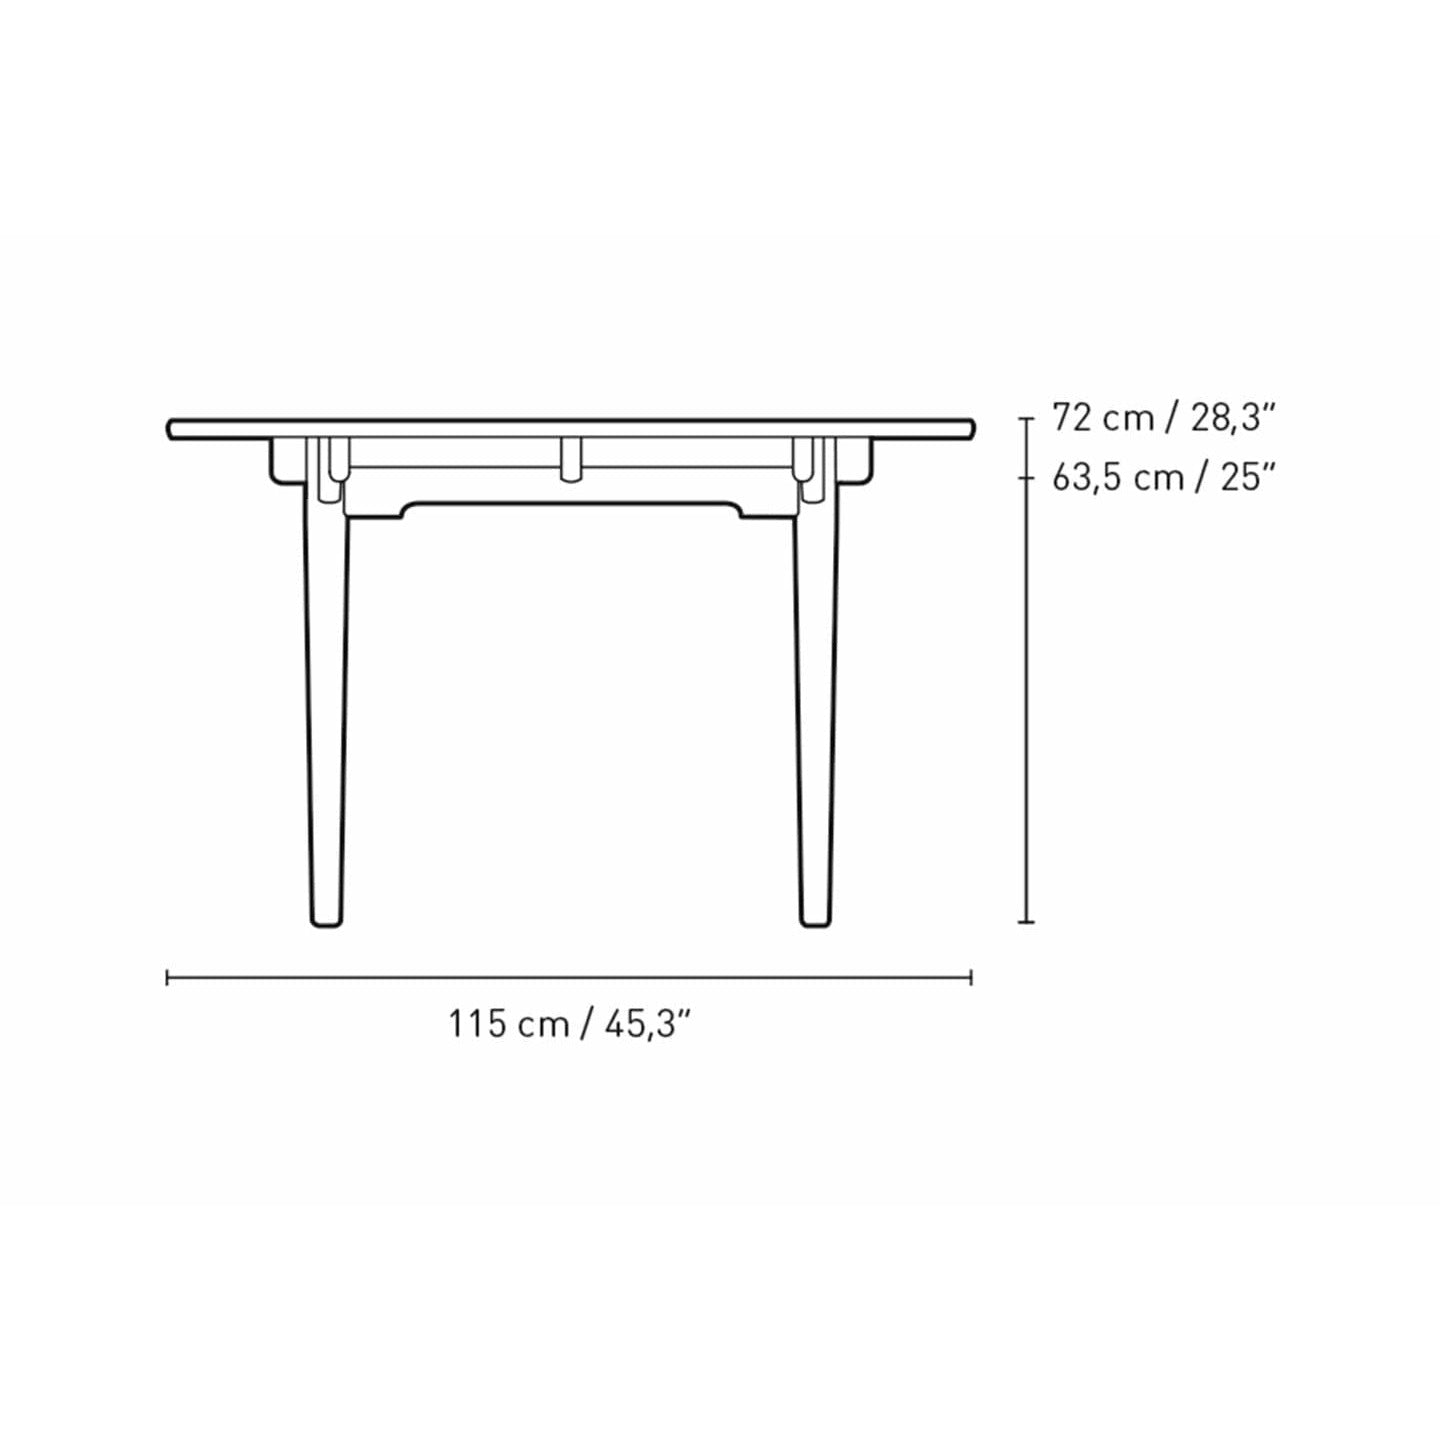 Carl Hansen CH338 matbord med dragning för 2 plattor, ekrökt olja